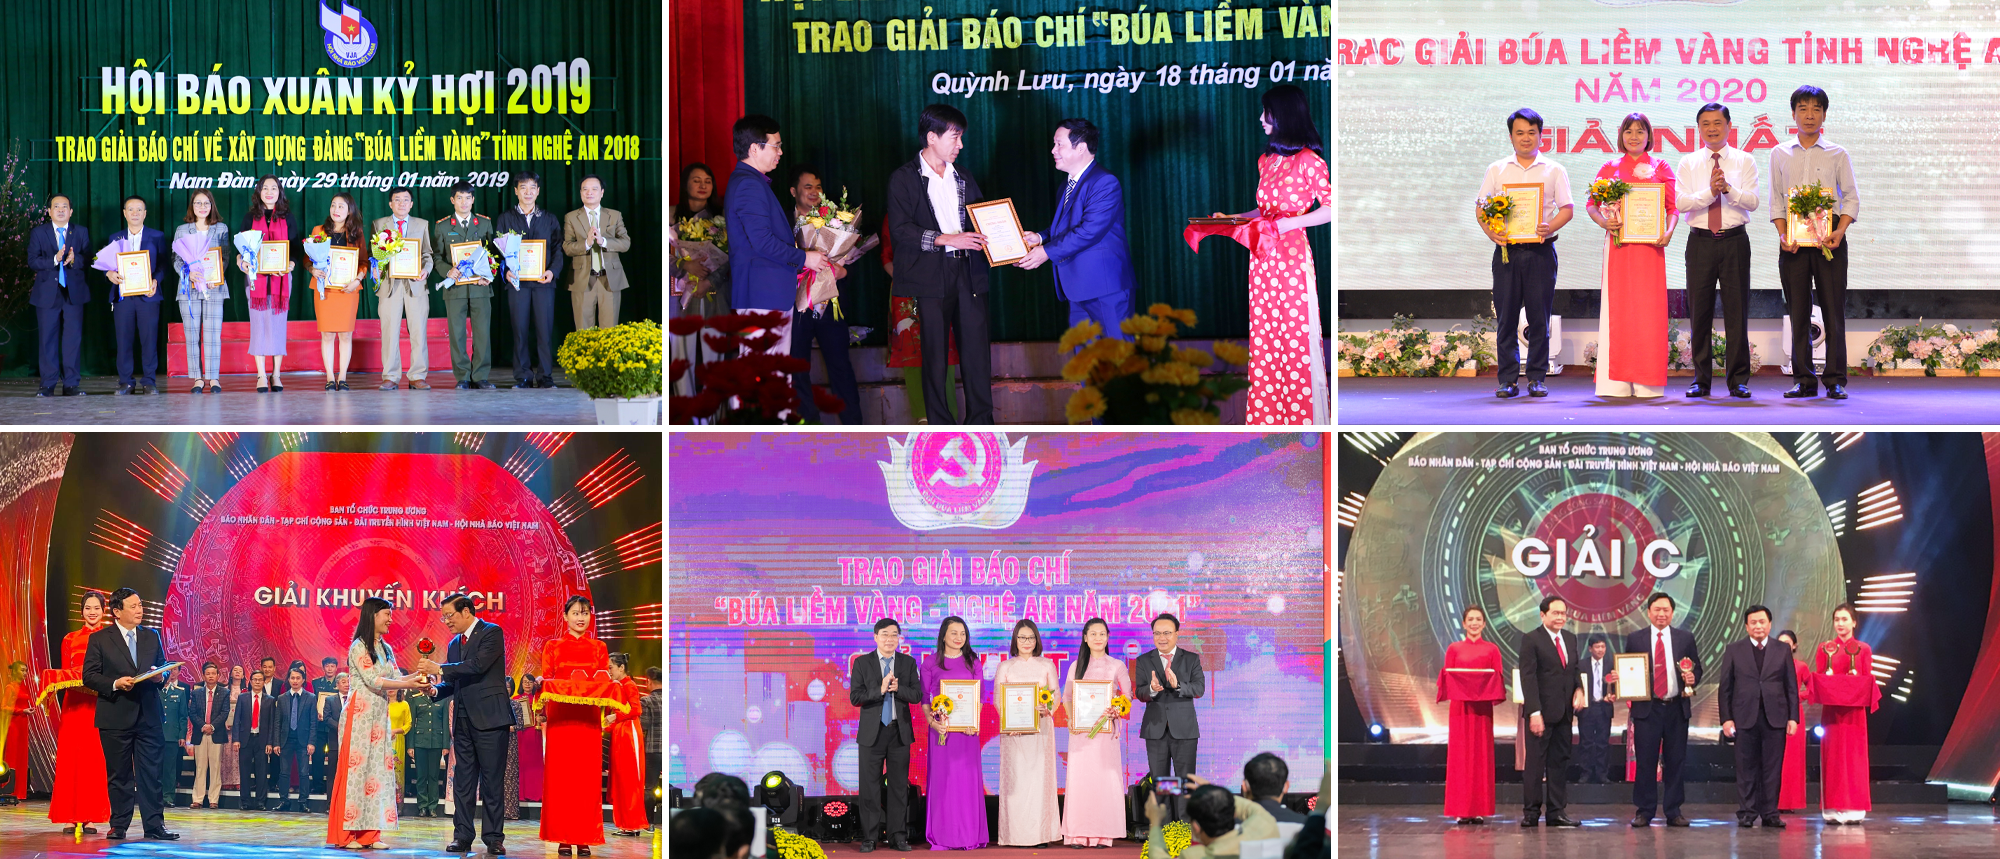 Phóng viên Báo Nghệ An đạt Giải Báo chí viết về xây dựng Đảng “Búa liềm Vàng” tỉnh Nghệ An và toàn quốc trong các năm 2018 - 2021. Ảnh: P.V